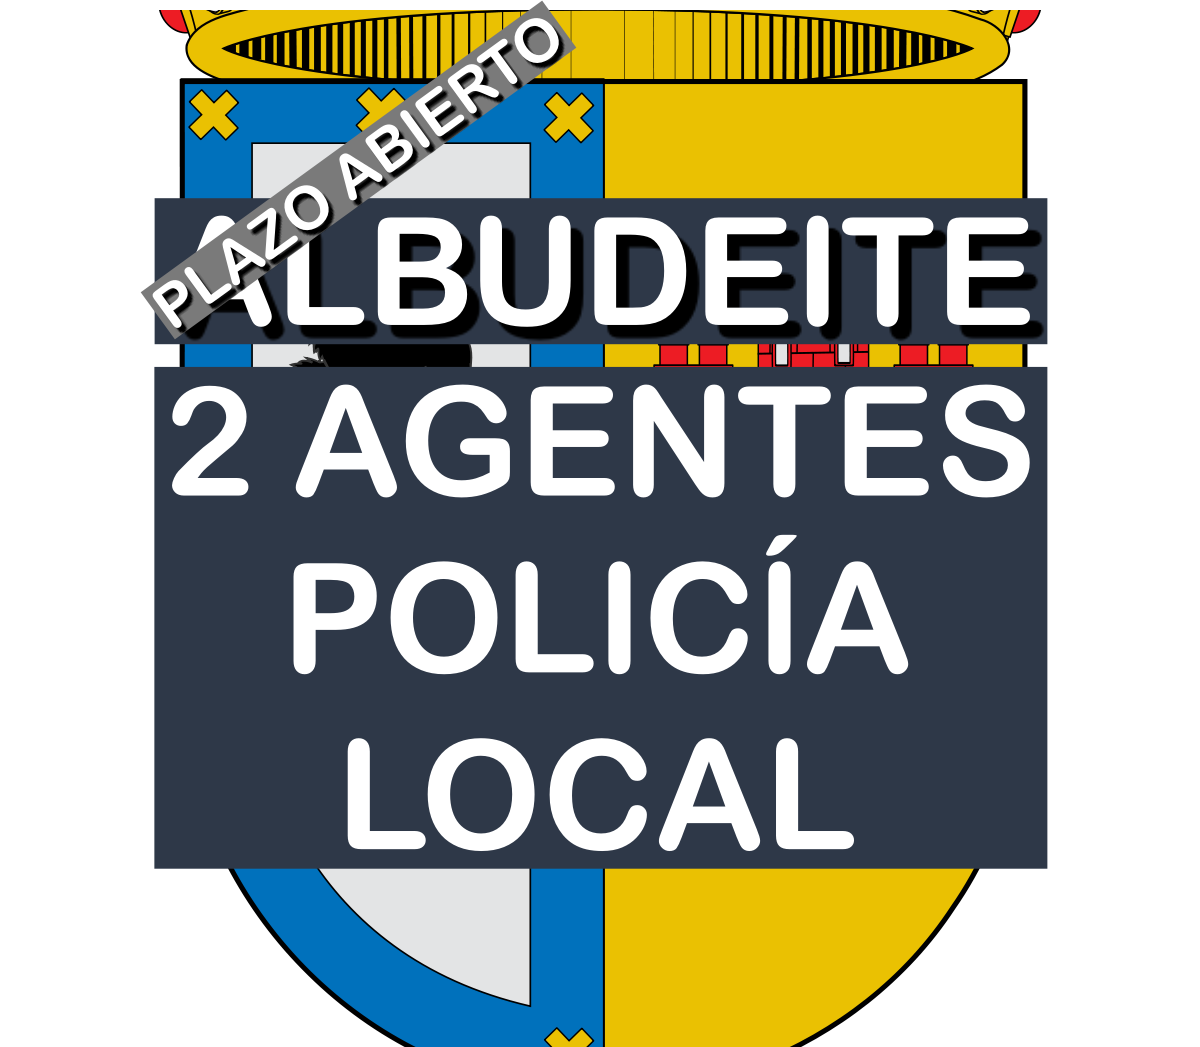 2 plazas Agente de Policía Local en Albudeite